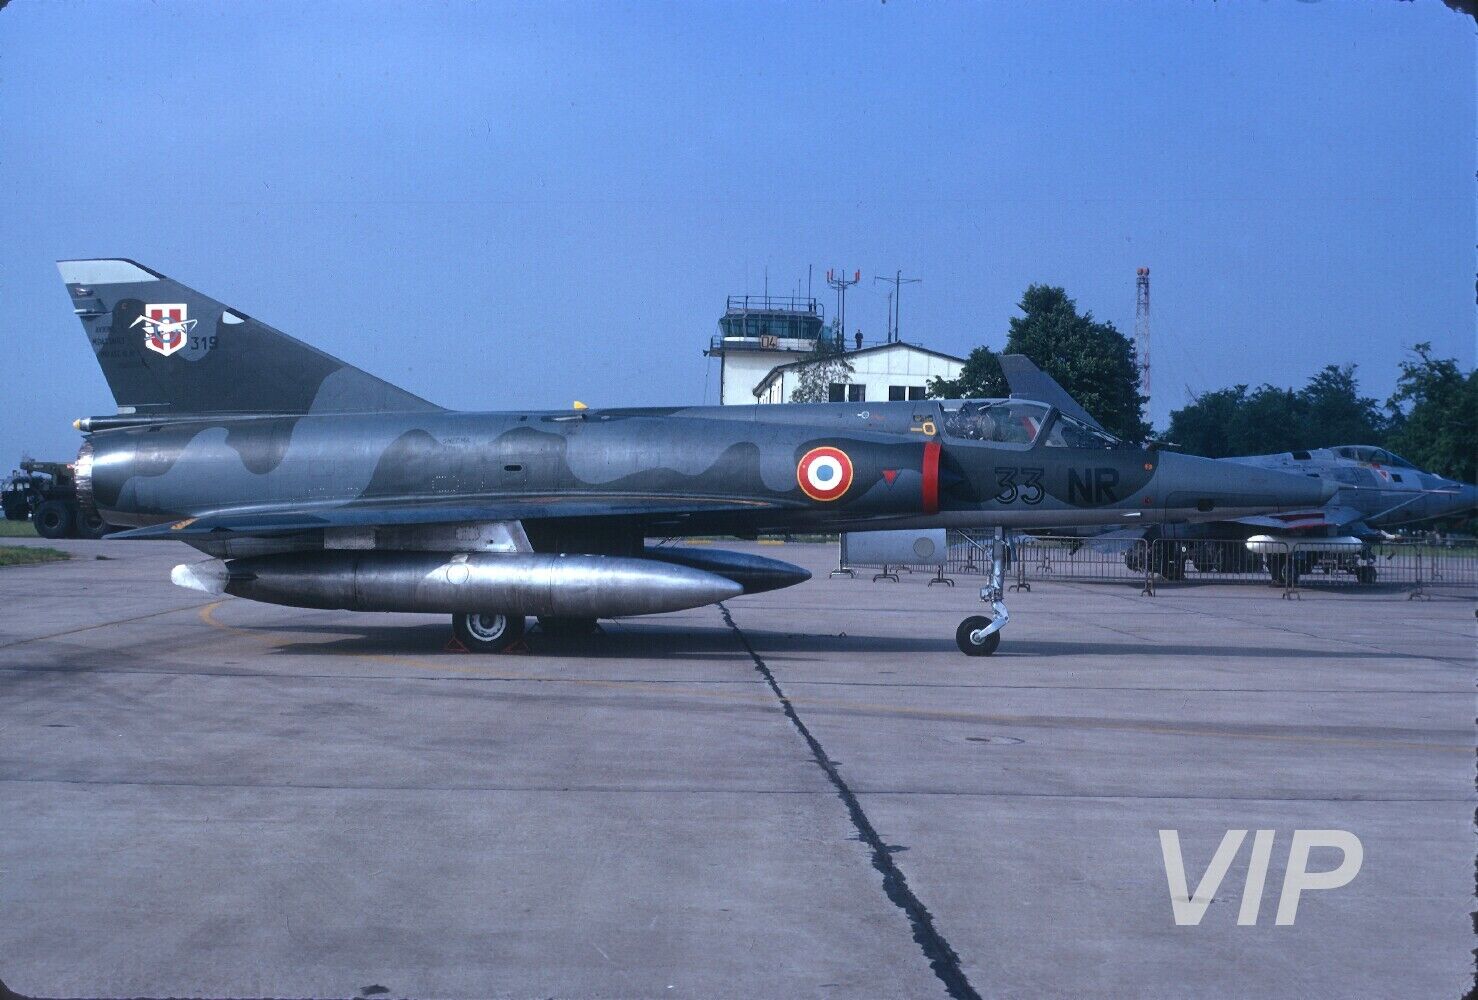 Original slide 33-NR Dassault Mirage French Air Force, 1972